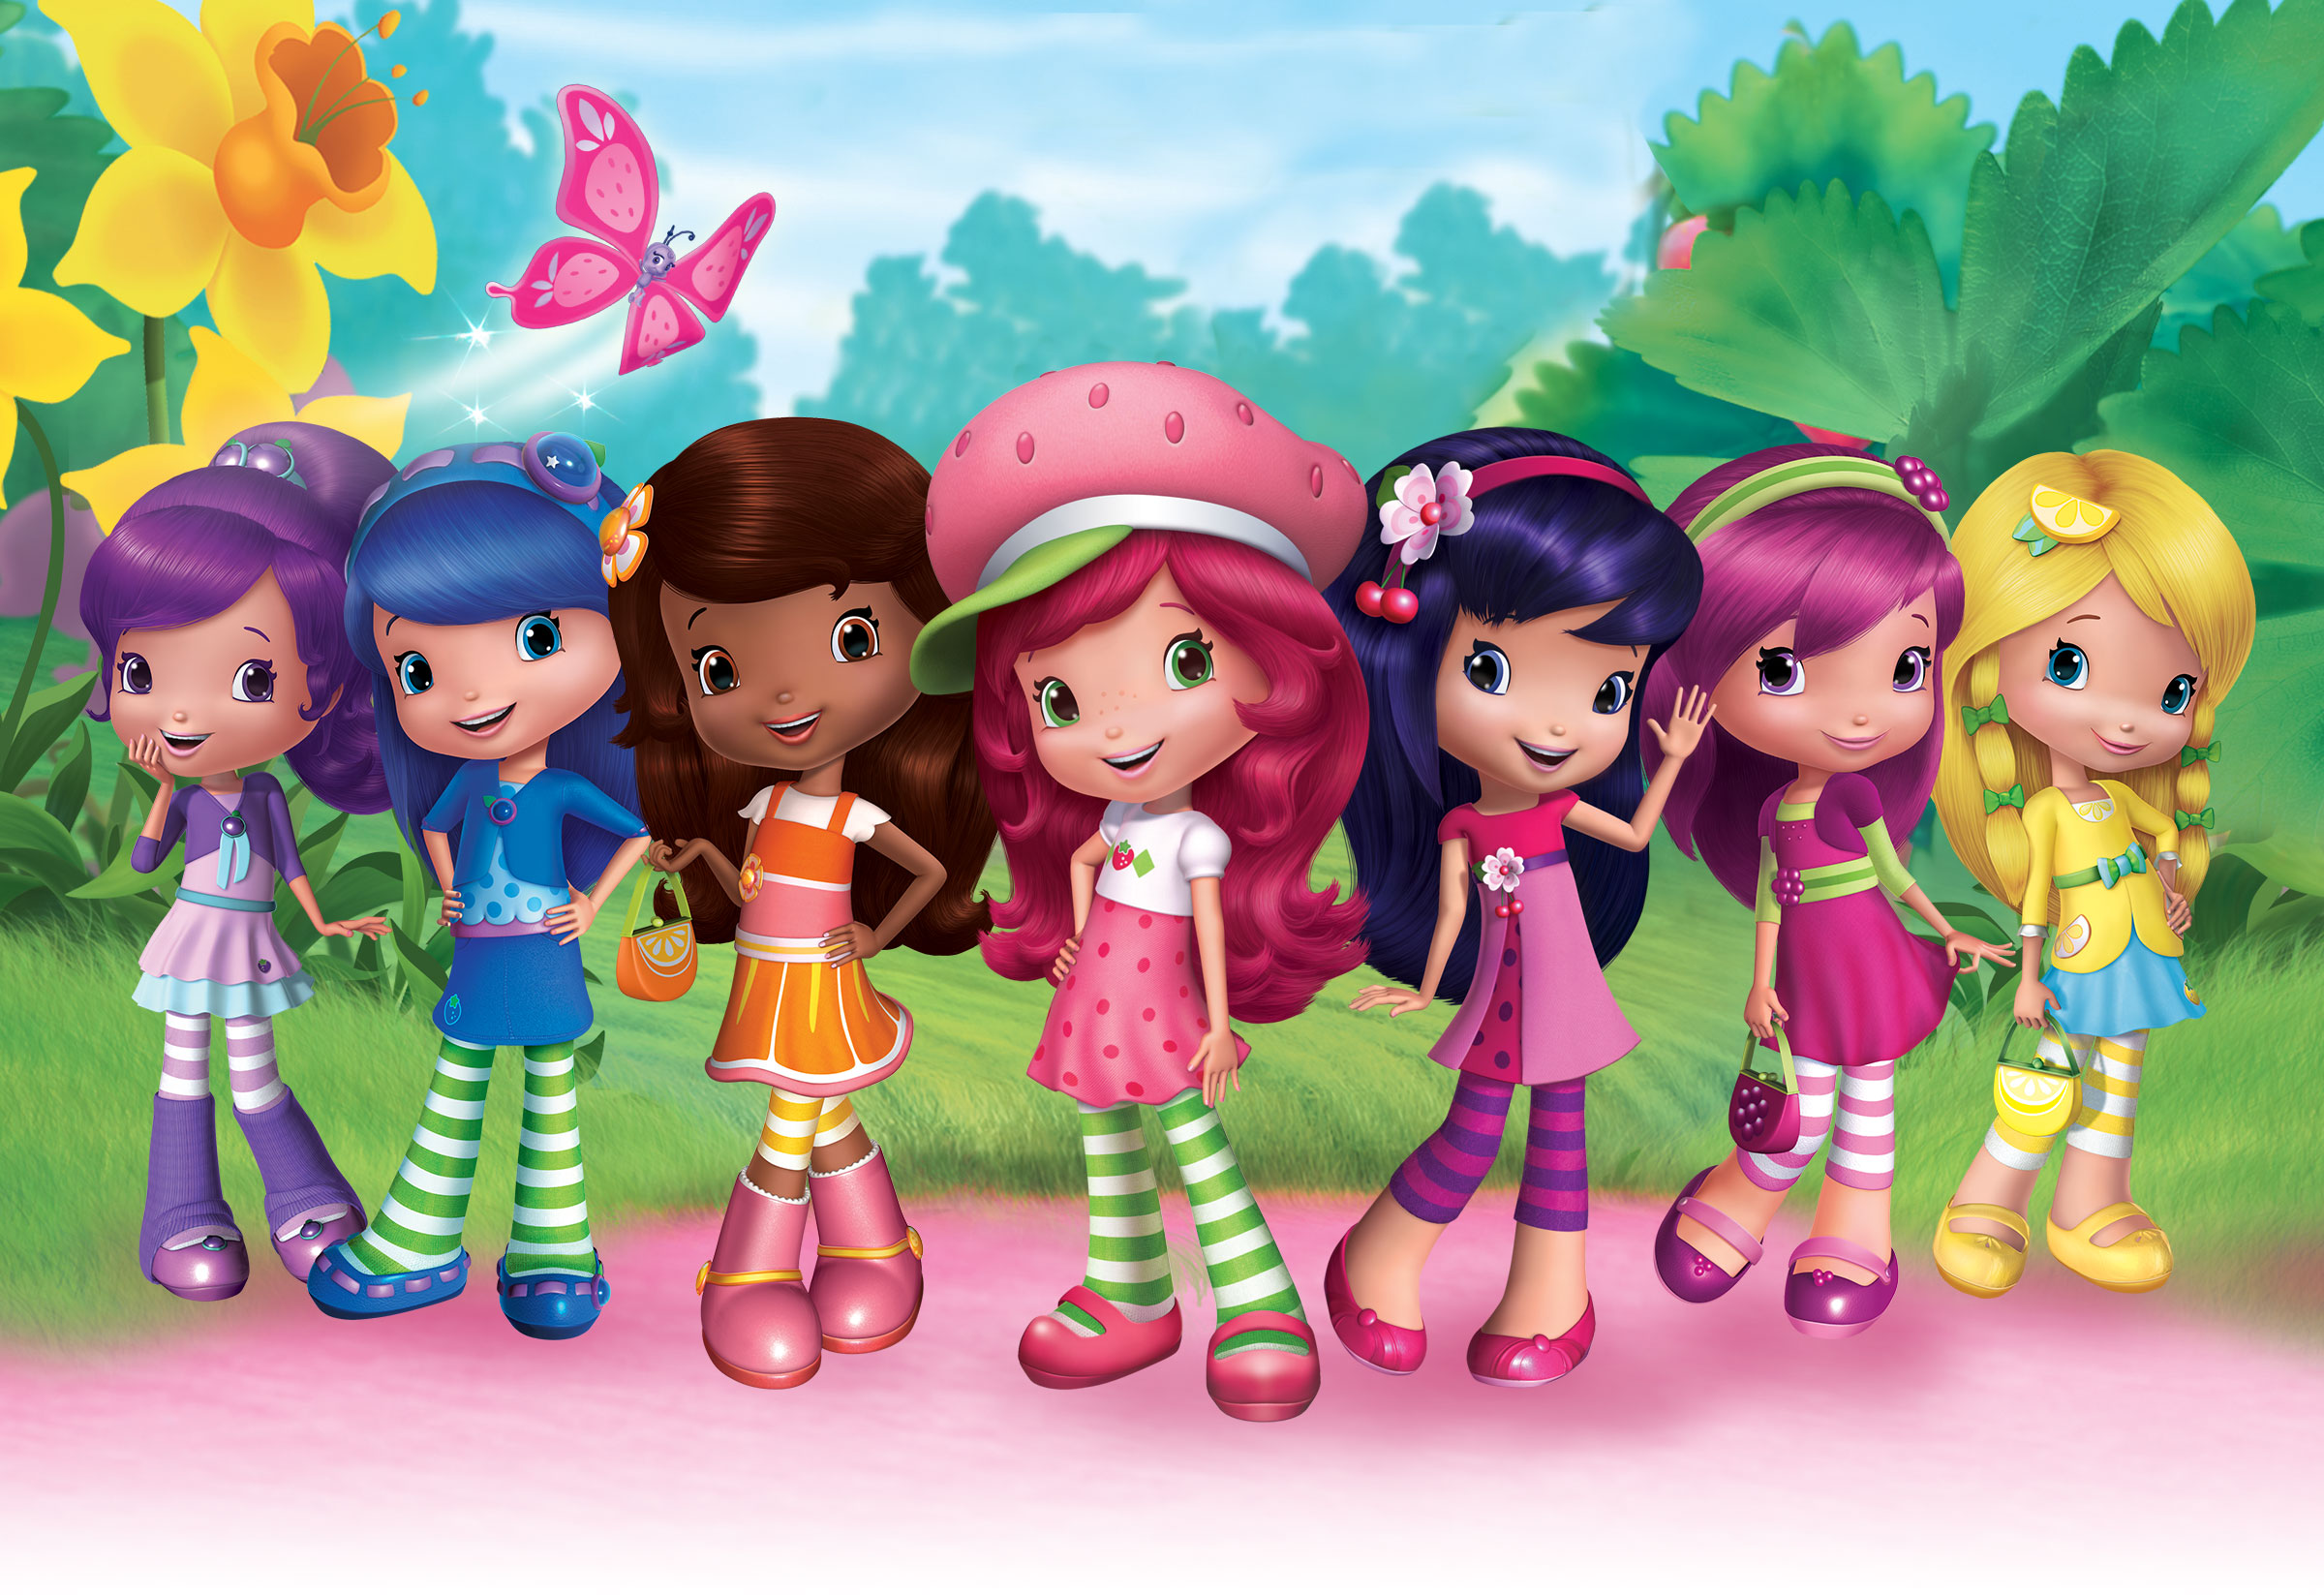 Siete personajes femeninos de dibujos animados, con cabello y ropa de colores brillantes, en un jardín con un arbusto de fresa y grandes flores detrás de ellos.